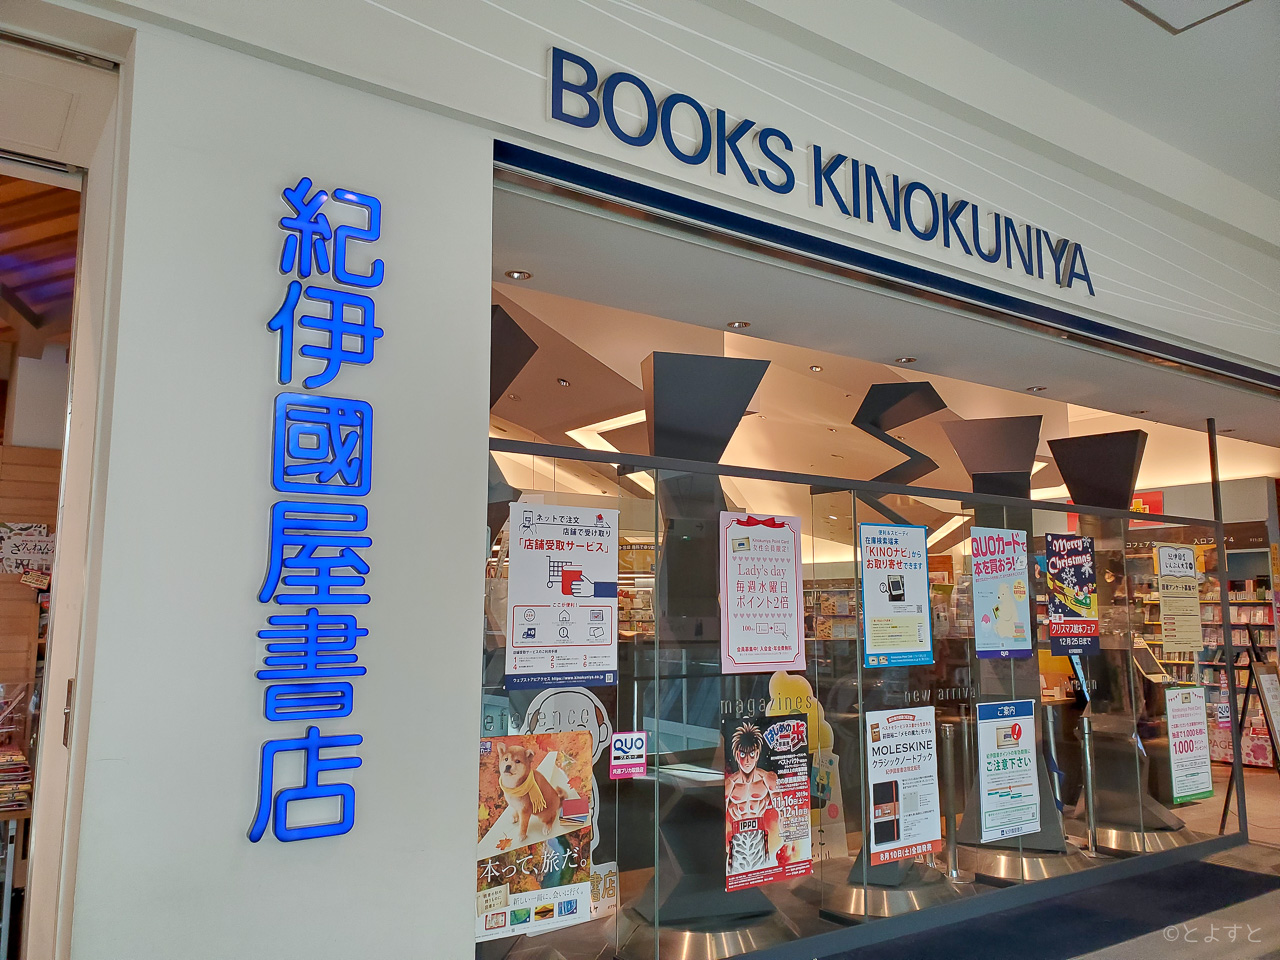 ららぽーと豊洲の 紀伊國屋書店 が1 5に閉店へ 併設の Pcデポ は 有明 に移転 とよすと